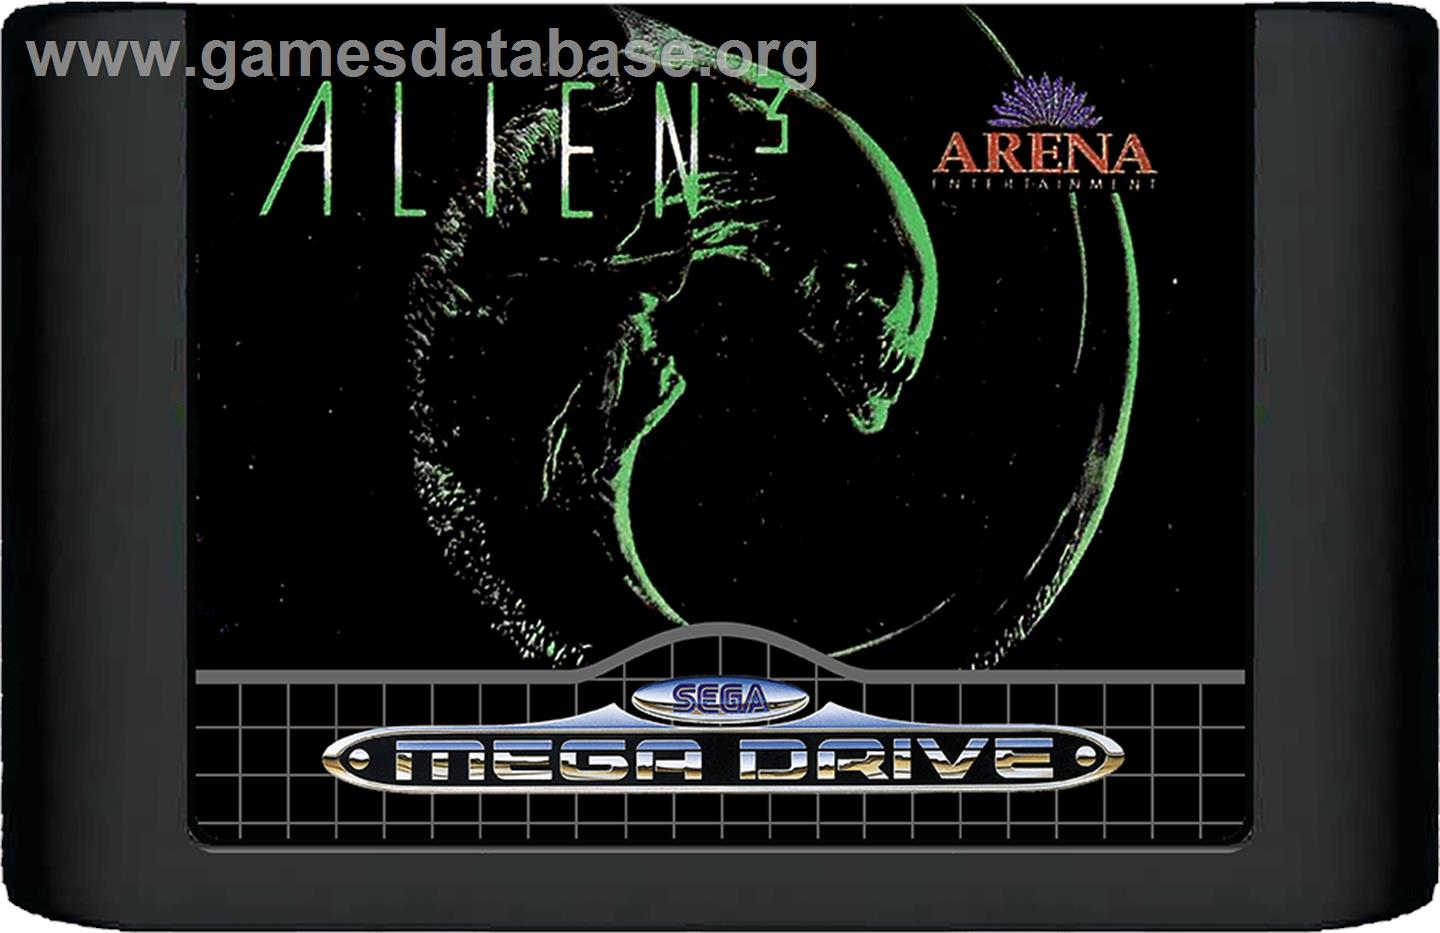 Alien³ - Sega Genesis - Artwork - Cartridge